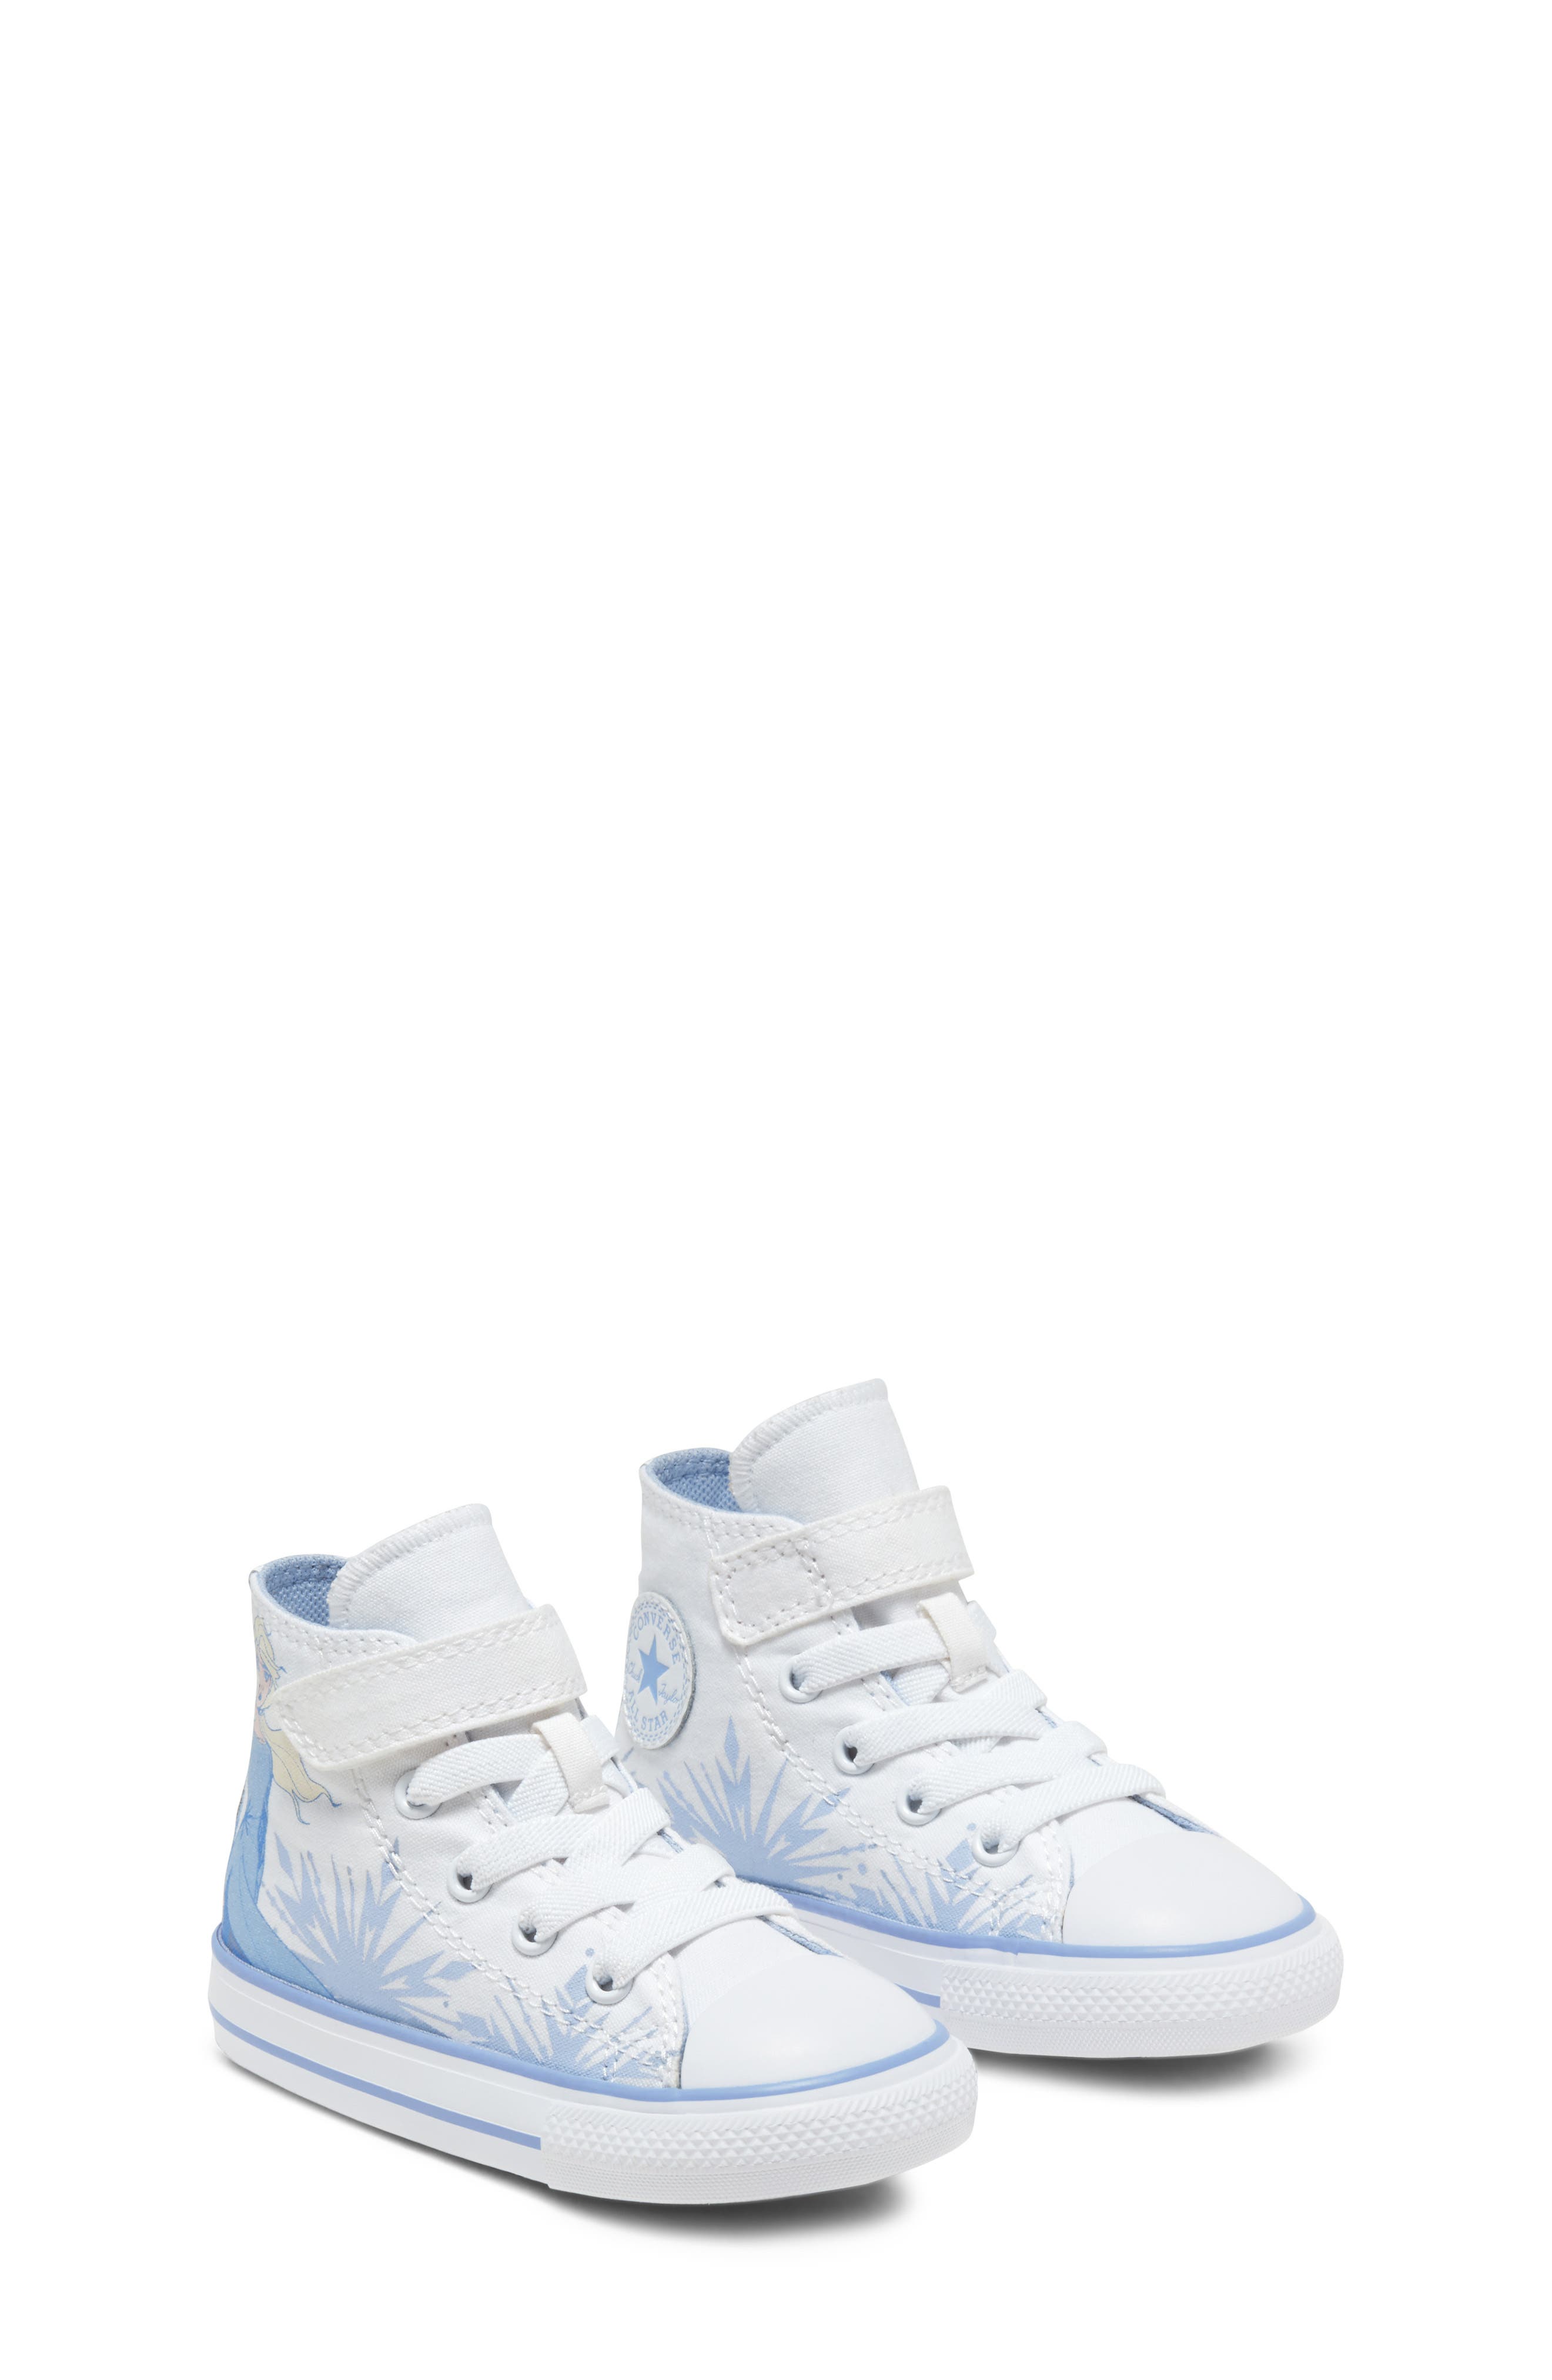 frozen converse shoes